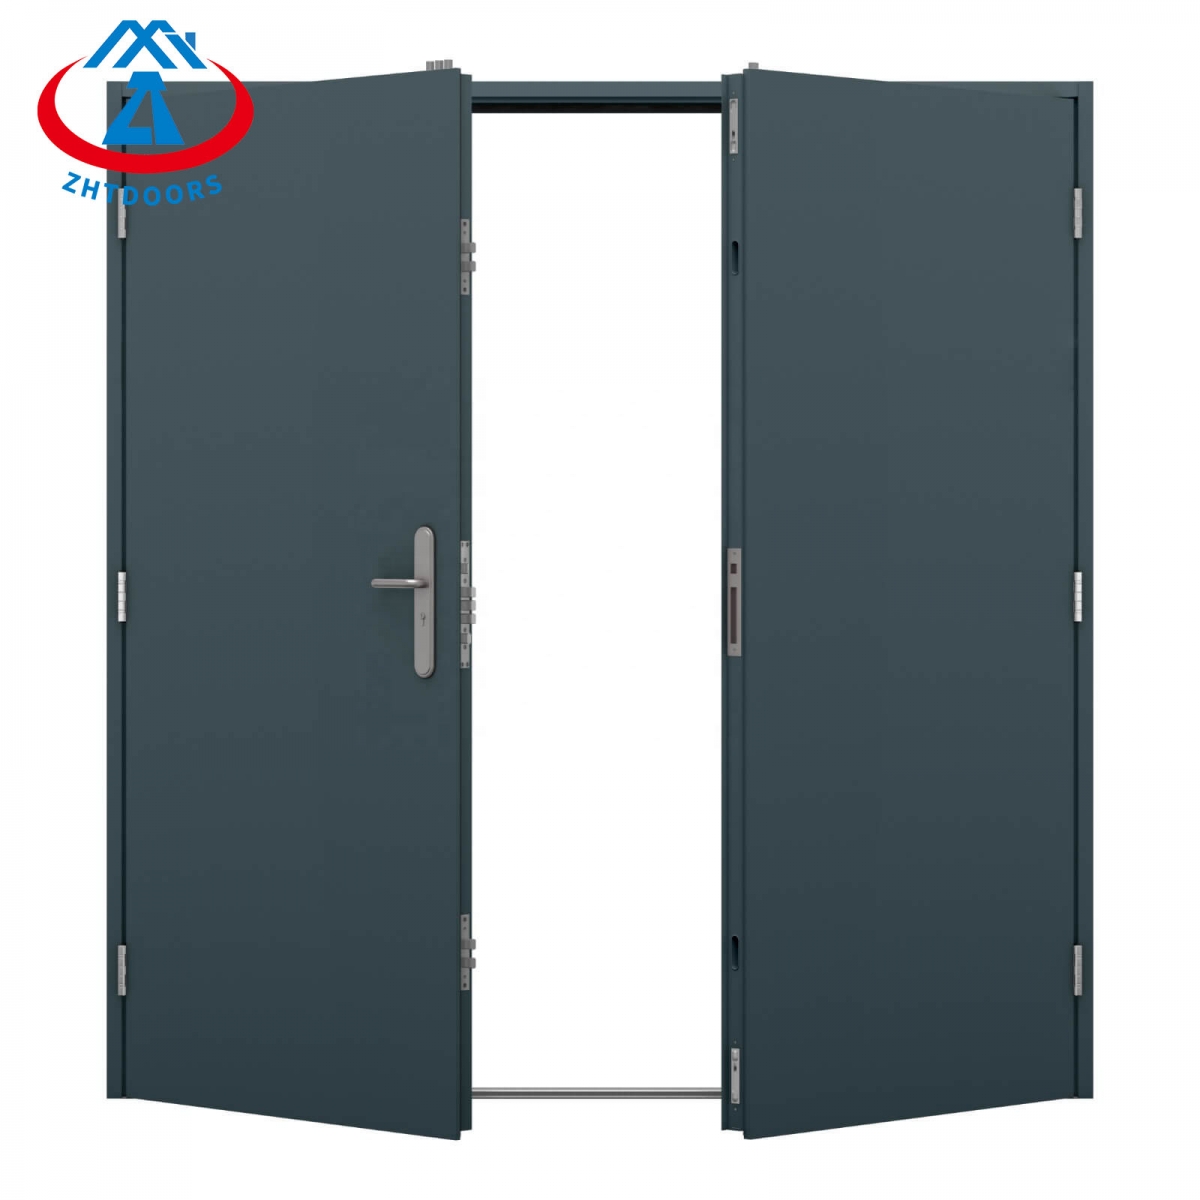 UL Fireproof Door Us-ZTFIRE Door- Fire Door,Fireproof Door,Fire rated Door,Fire Resistant Door,Steel Door,Metal Door,Exit Door